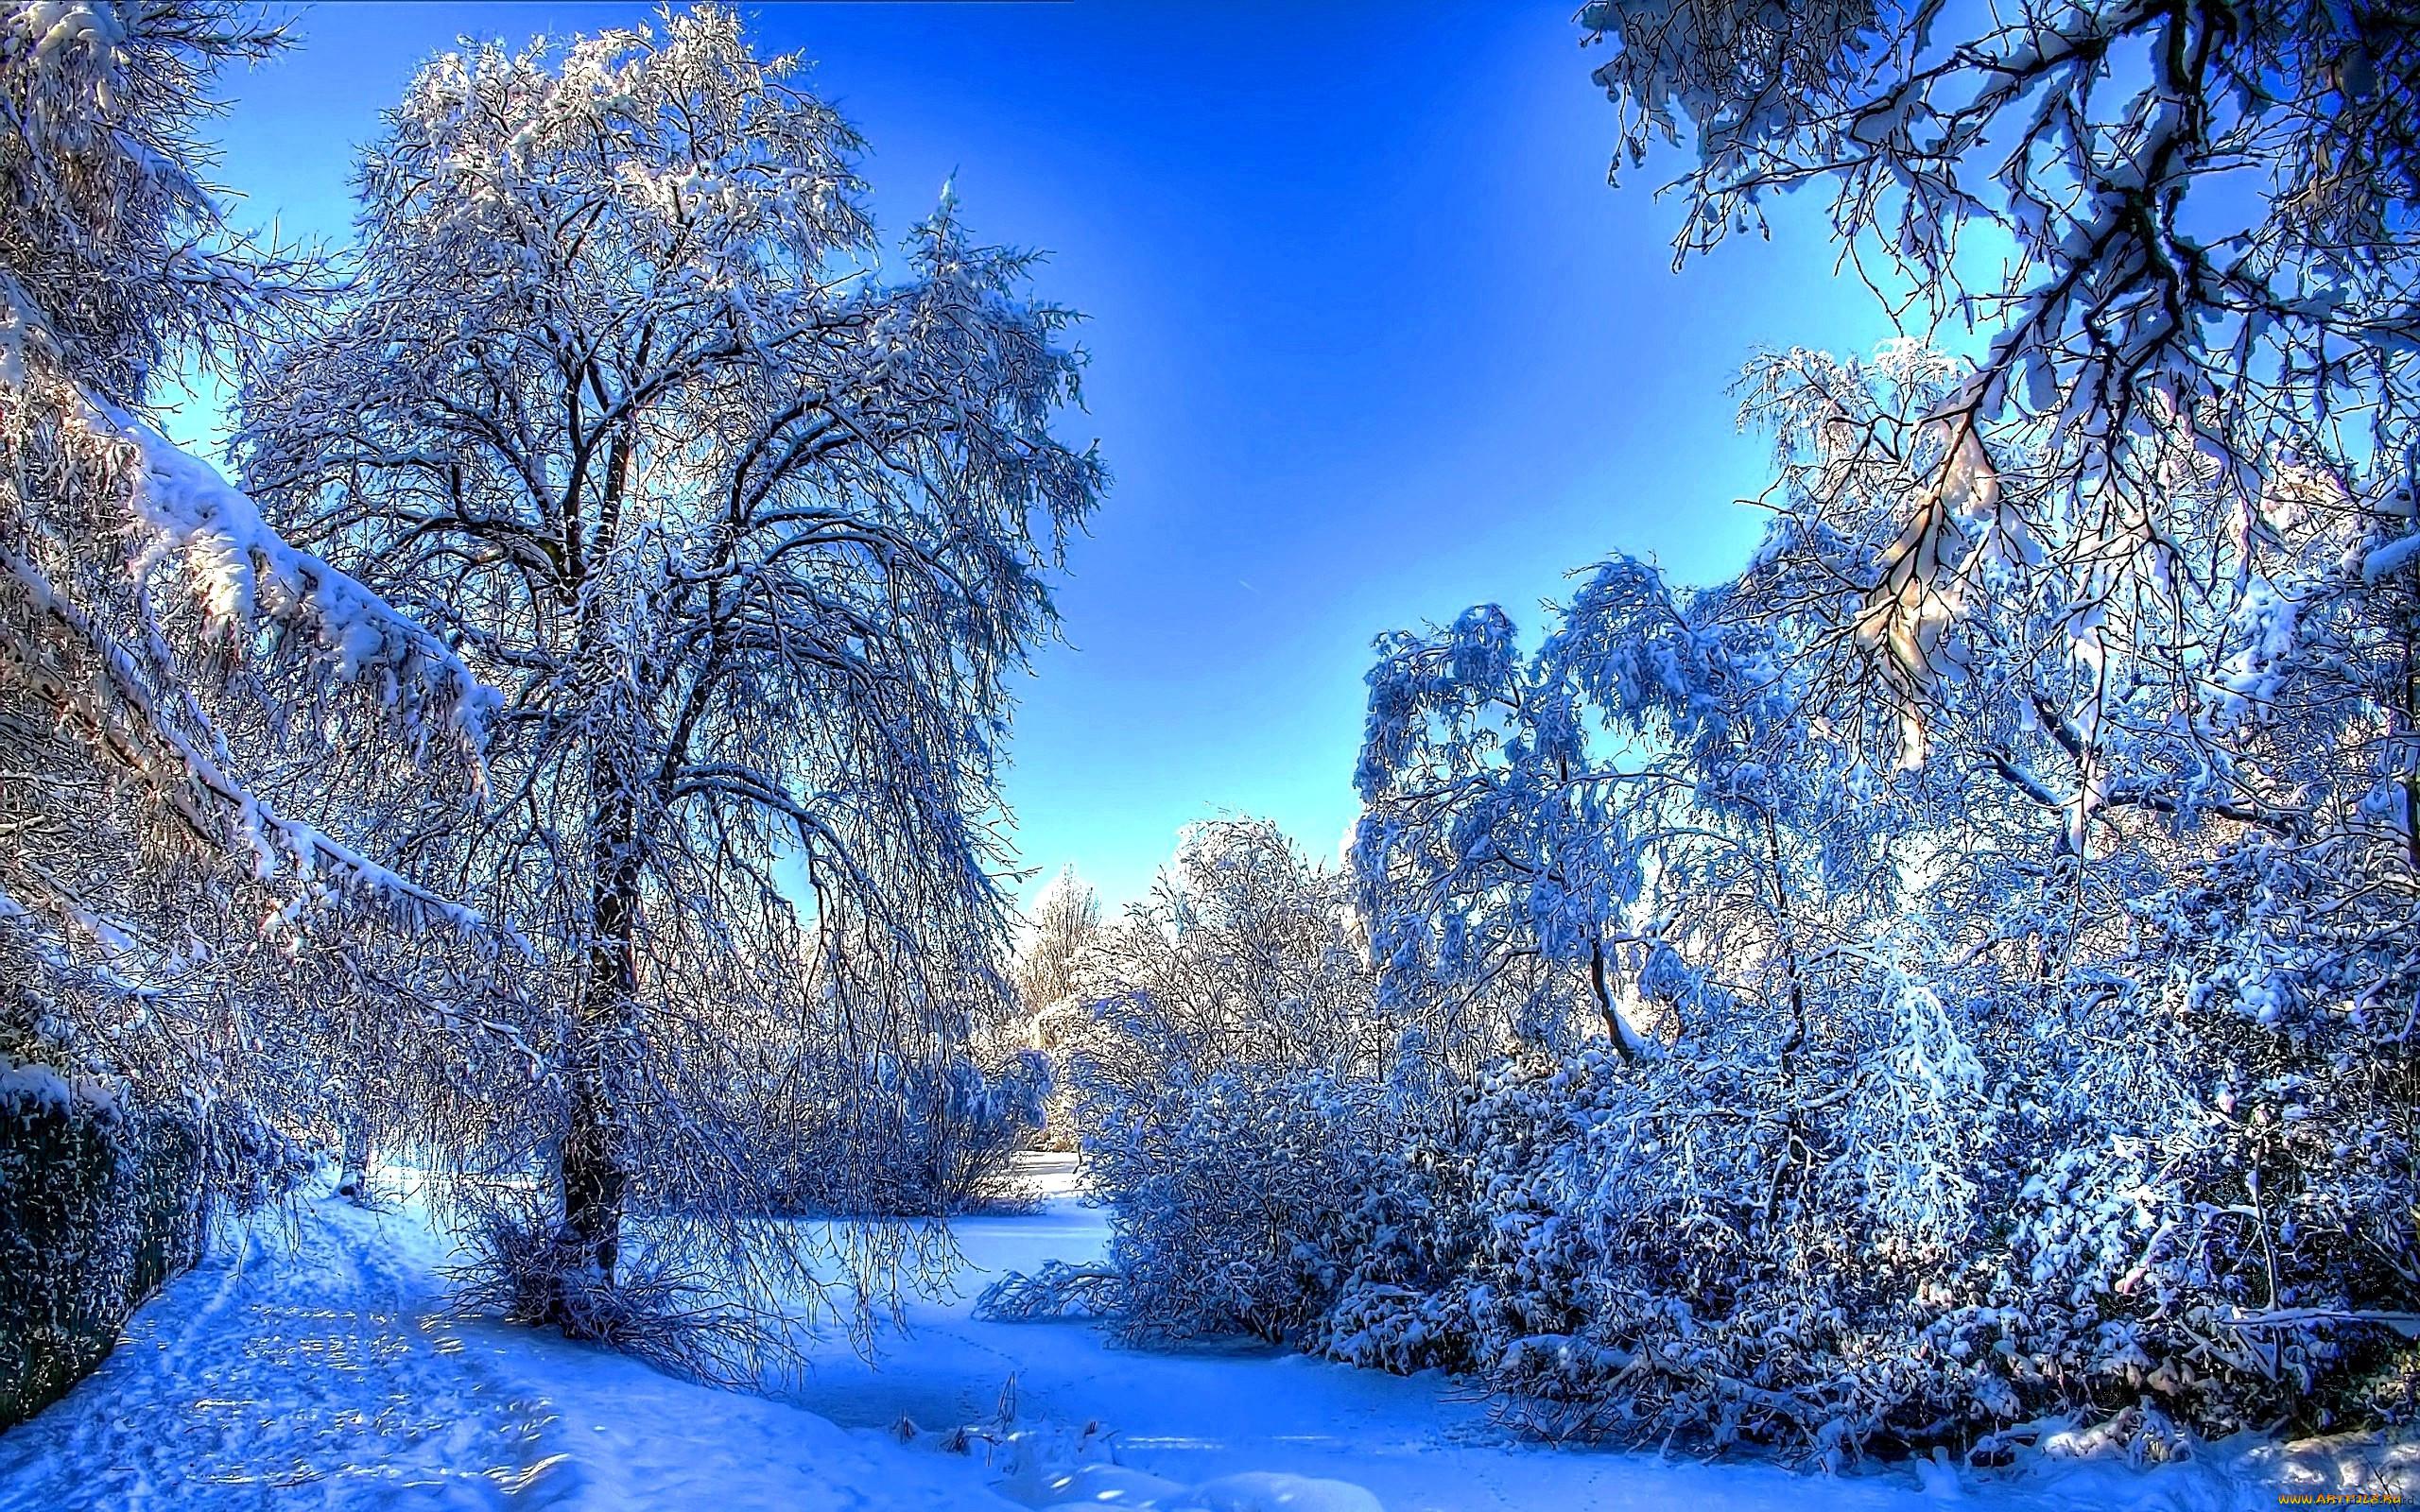 Обои Природа Зима, обои для рабочего стола, фотографии природа, зима, лес,  снег, дорожка Обои для рабочего стола, скачать обои картинки заставки на  рабочий стол.